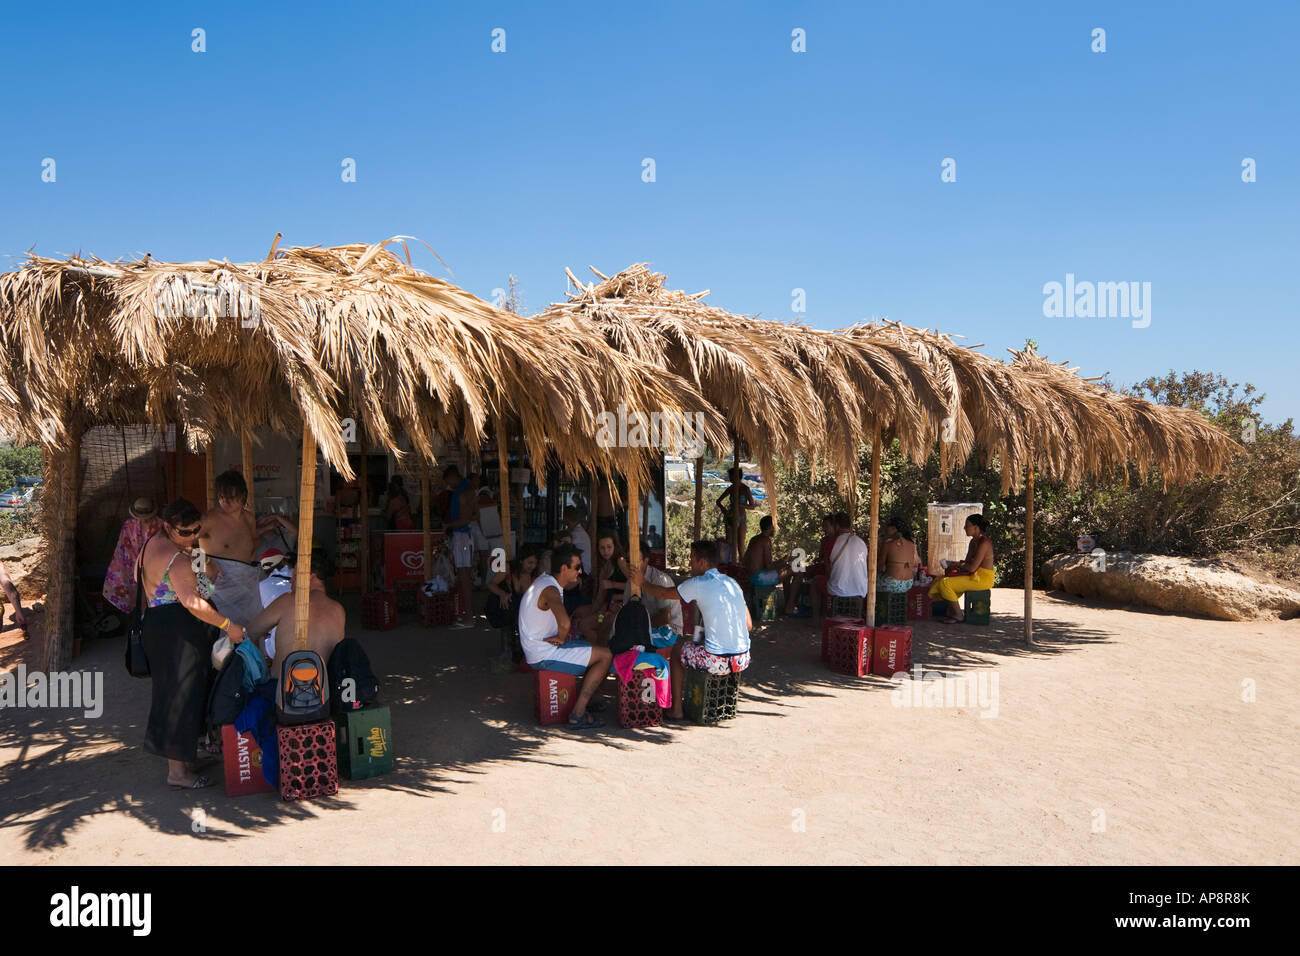 Bar de plage, plage d'Elafonissi, côte ouest, Province de La Canée, Crète, Grèce Banque D'Images